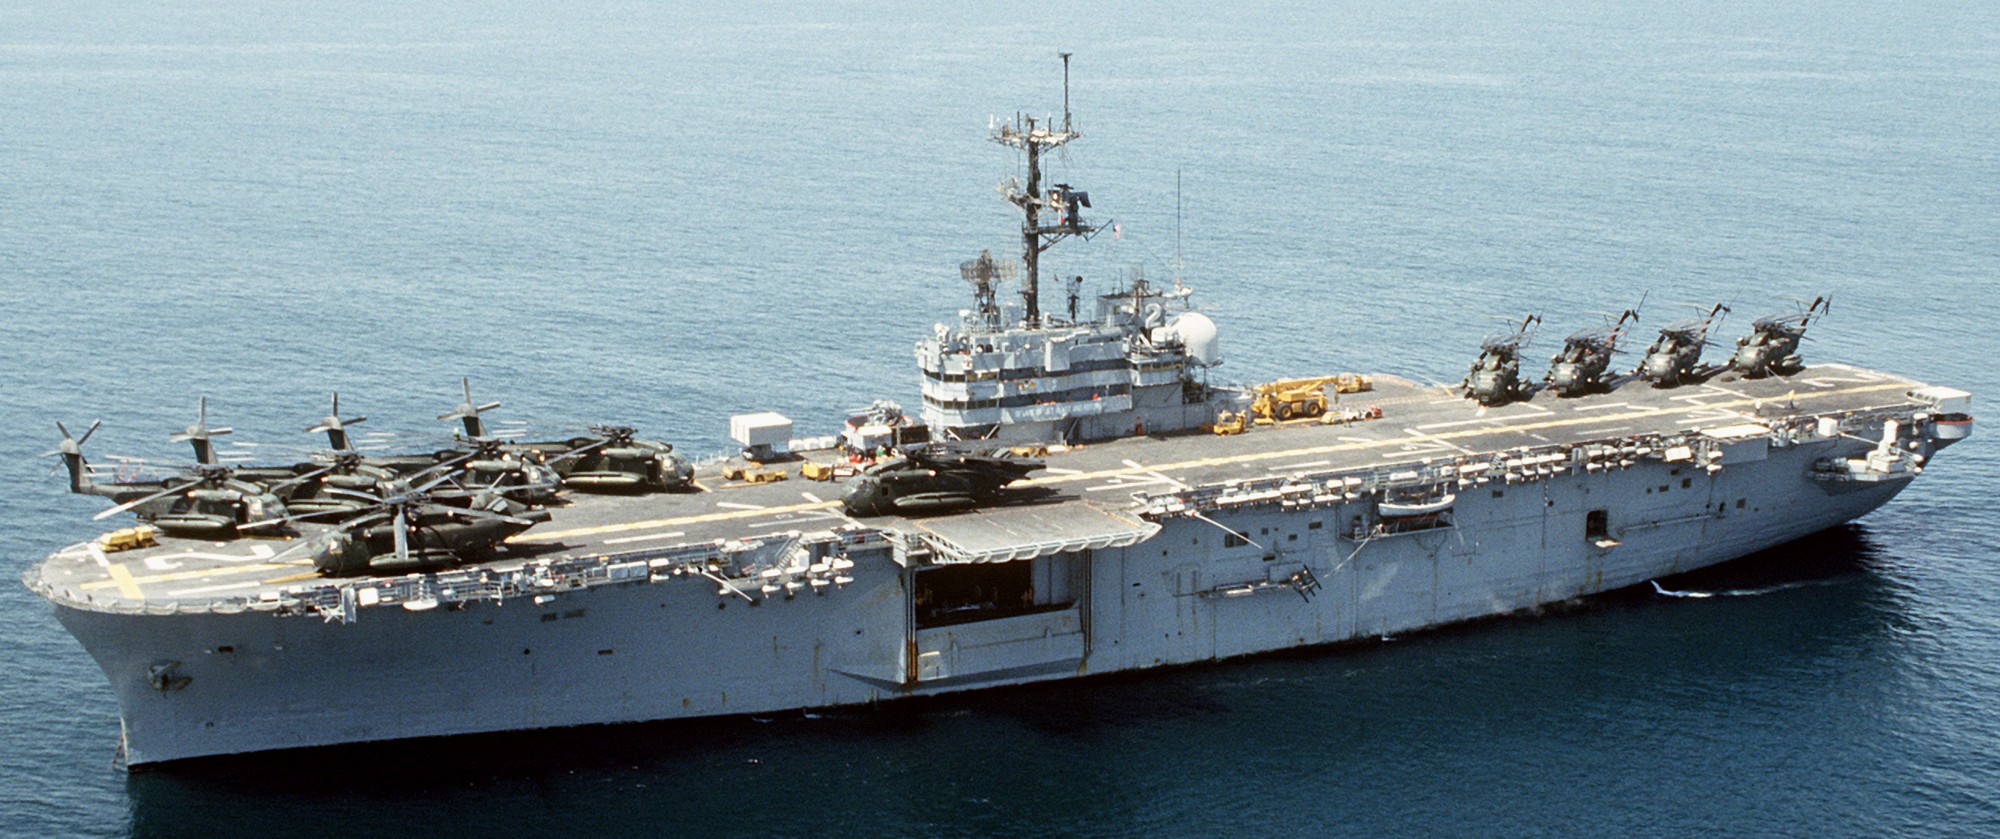 lph-2 uss iwo jima class amphibious assault ship landing platform helicopter us navy 66 operation desert storm